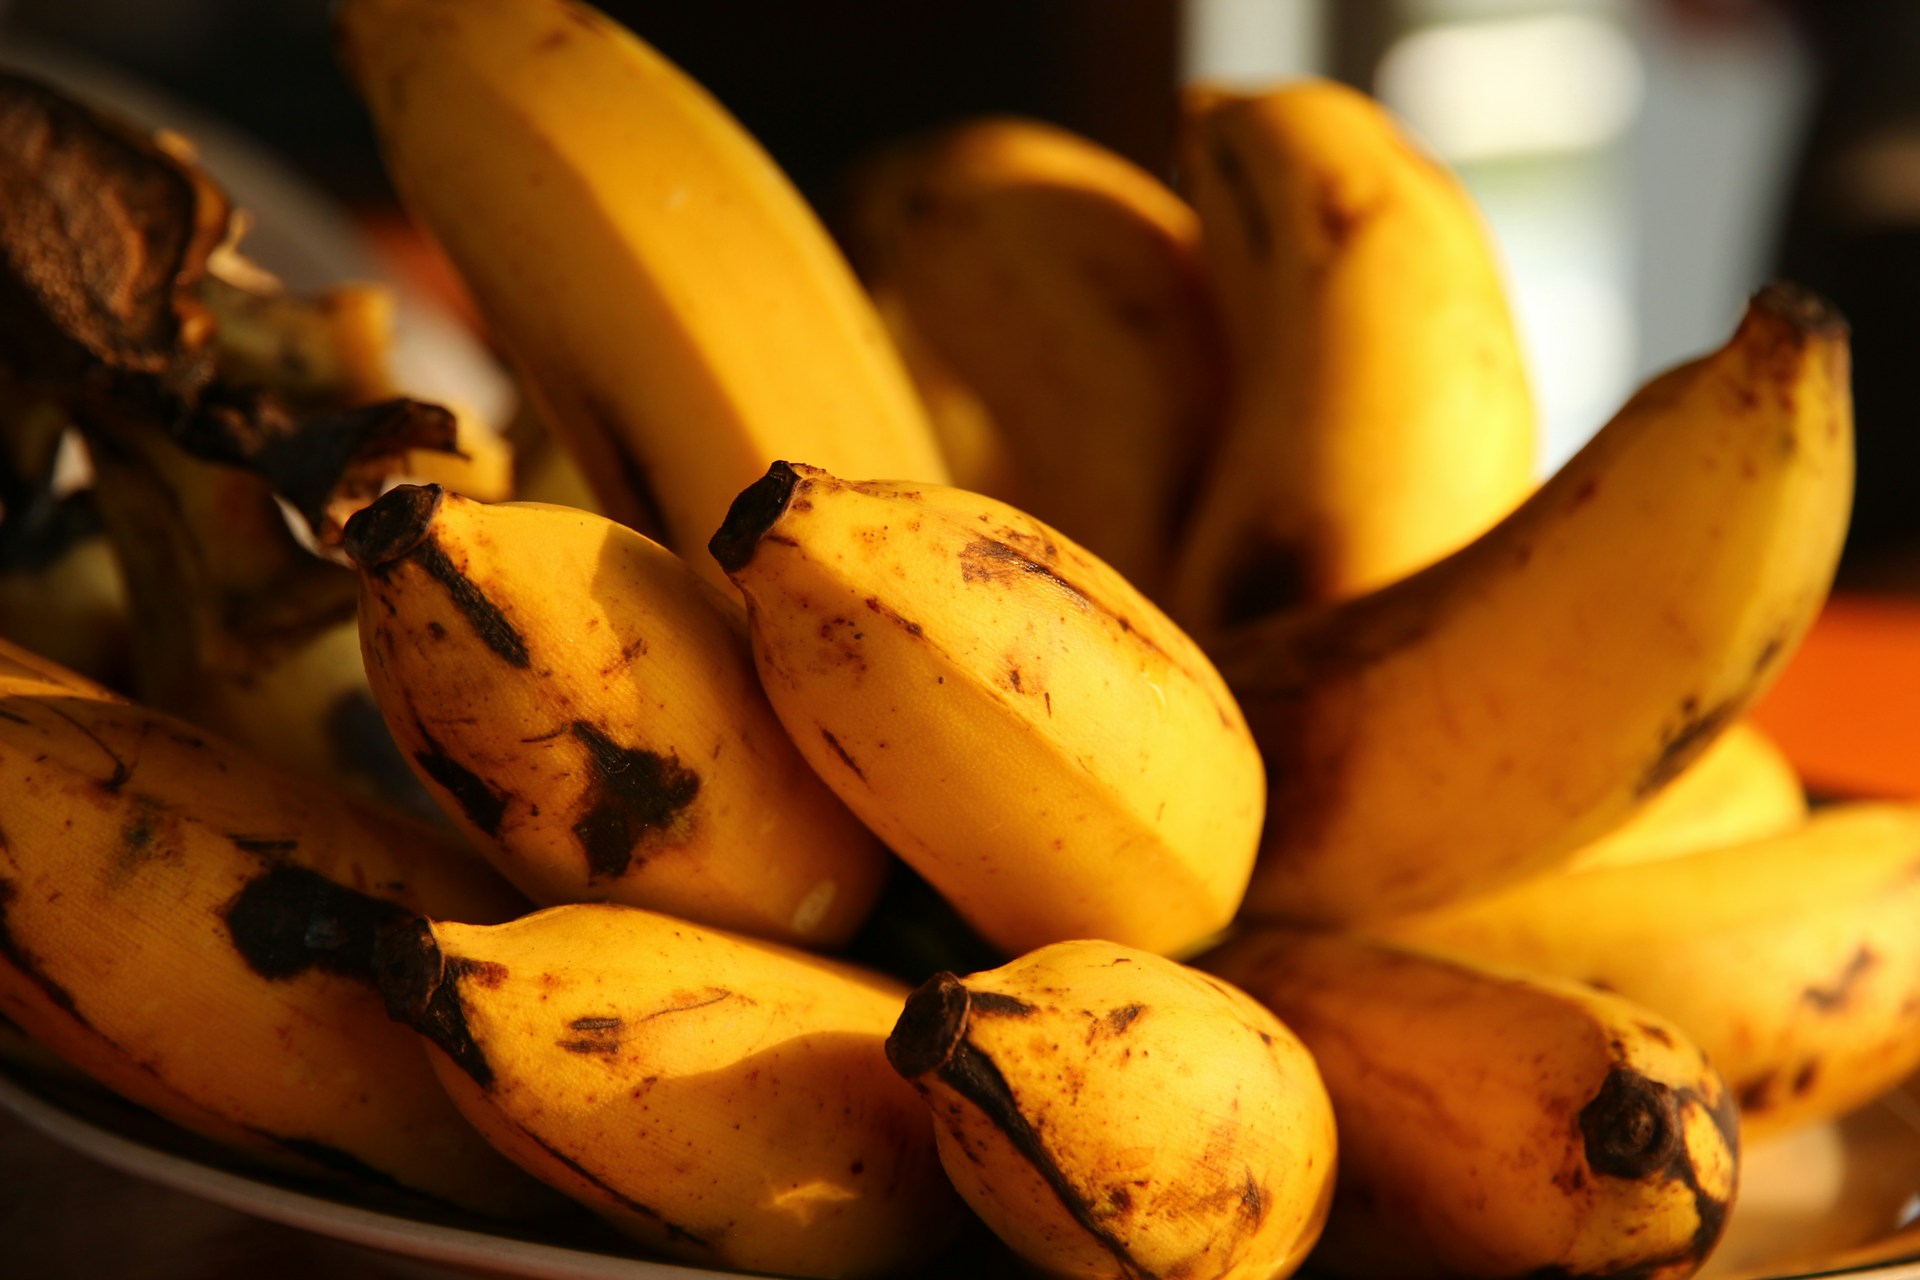 Calories in a banana - a photo of bananas